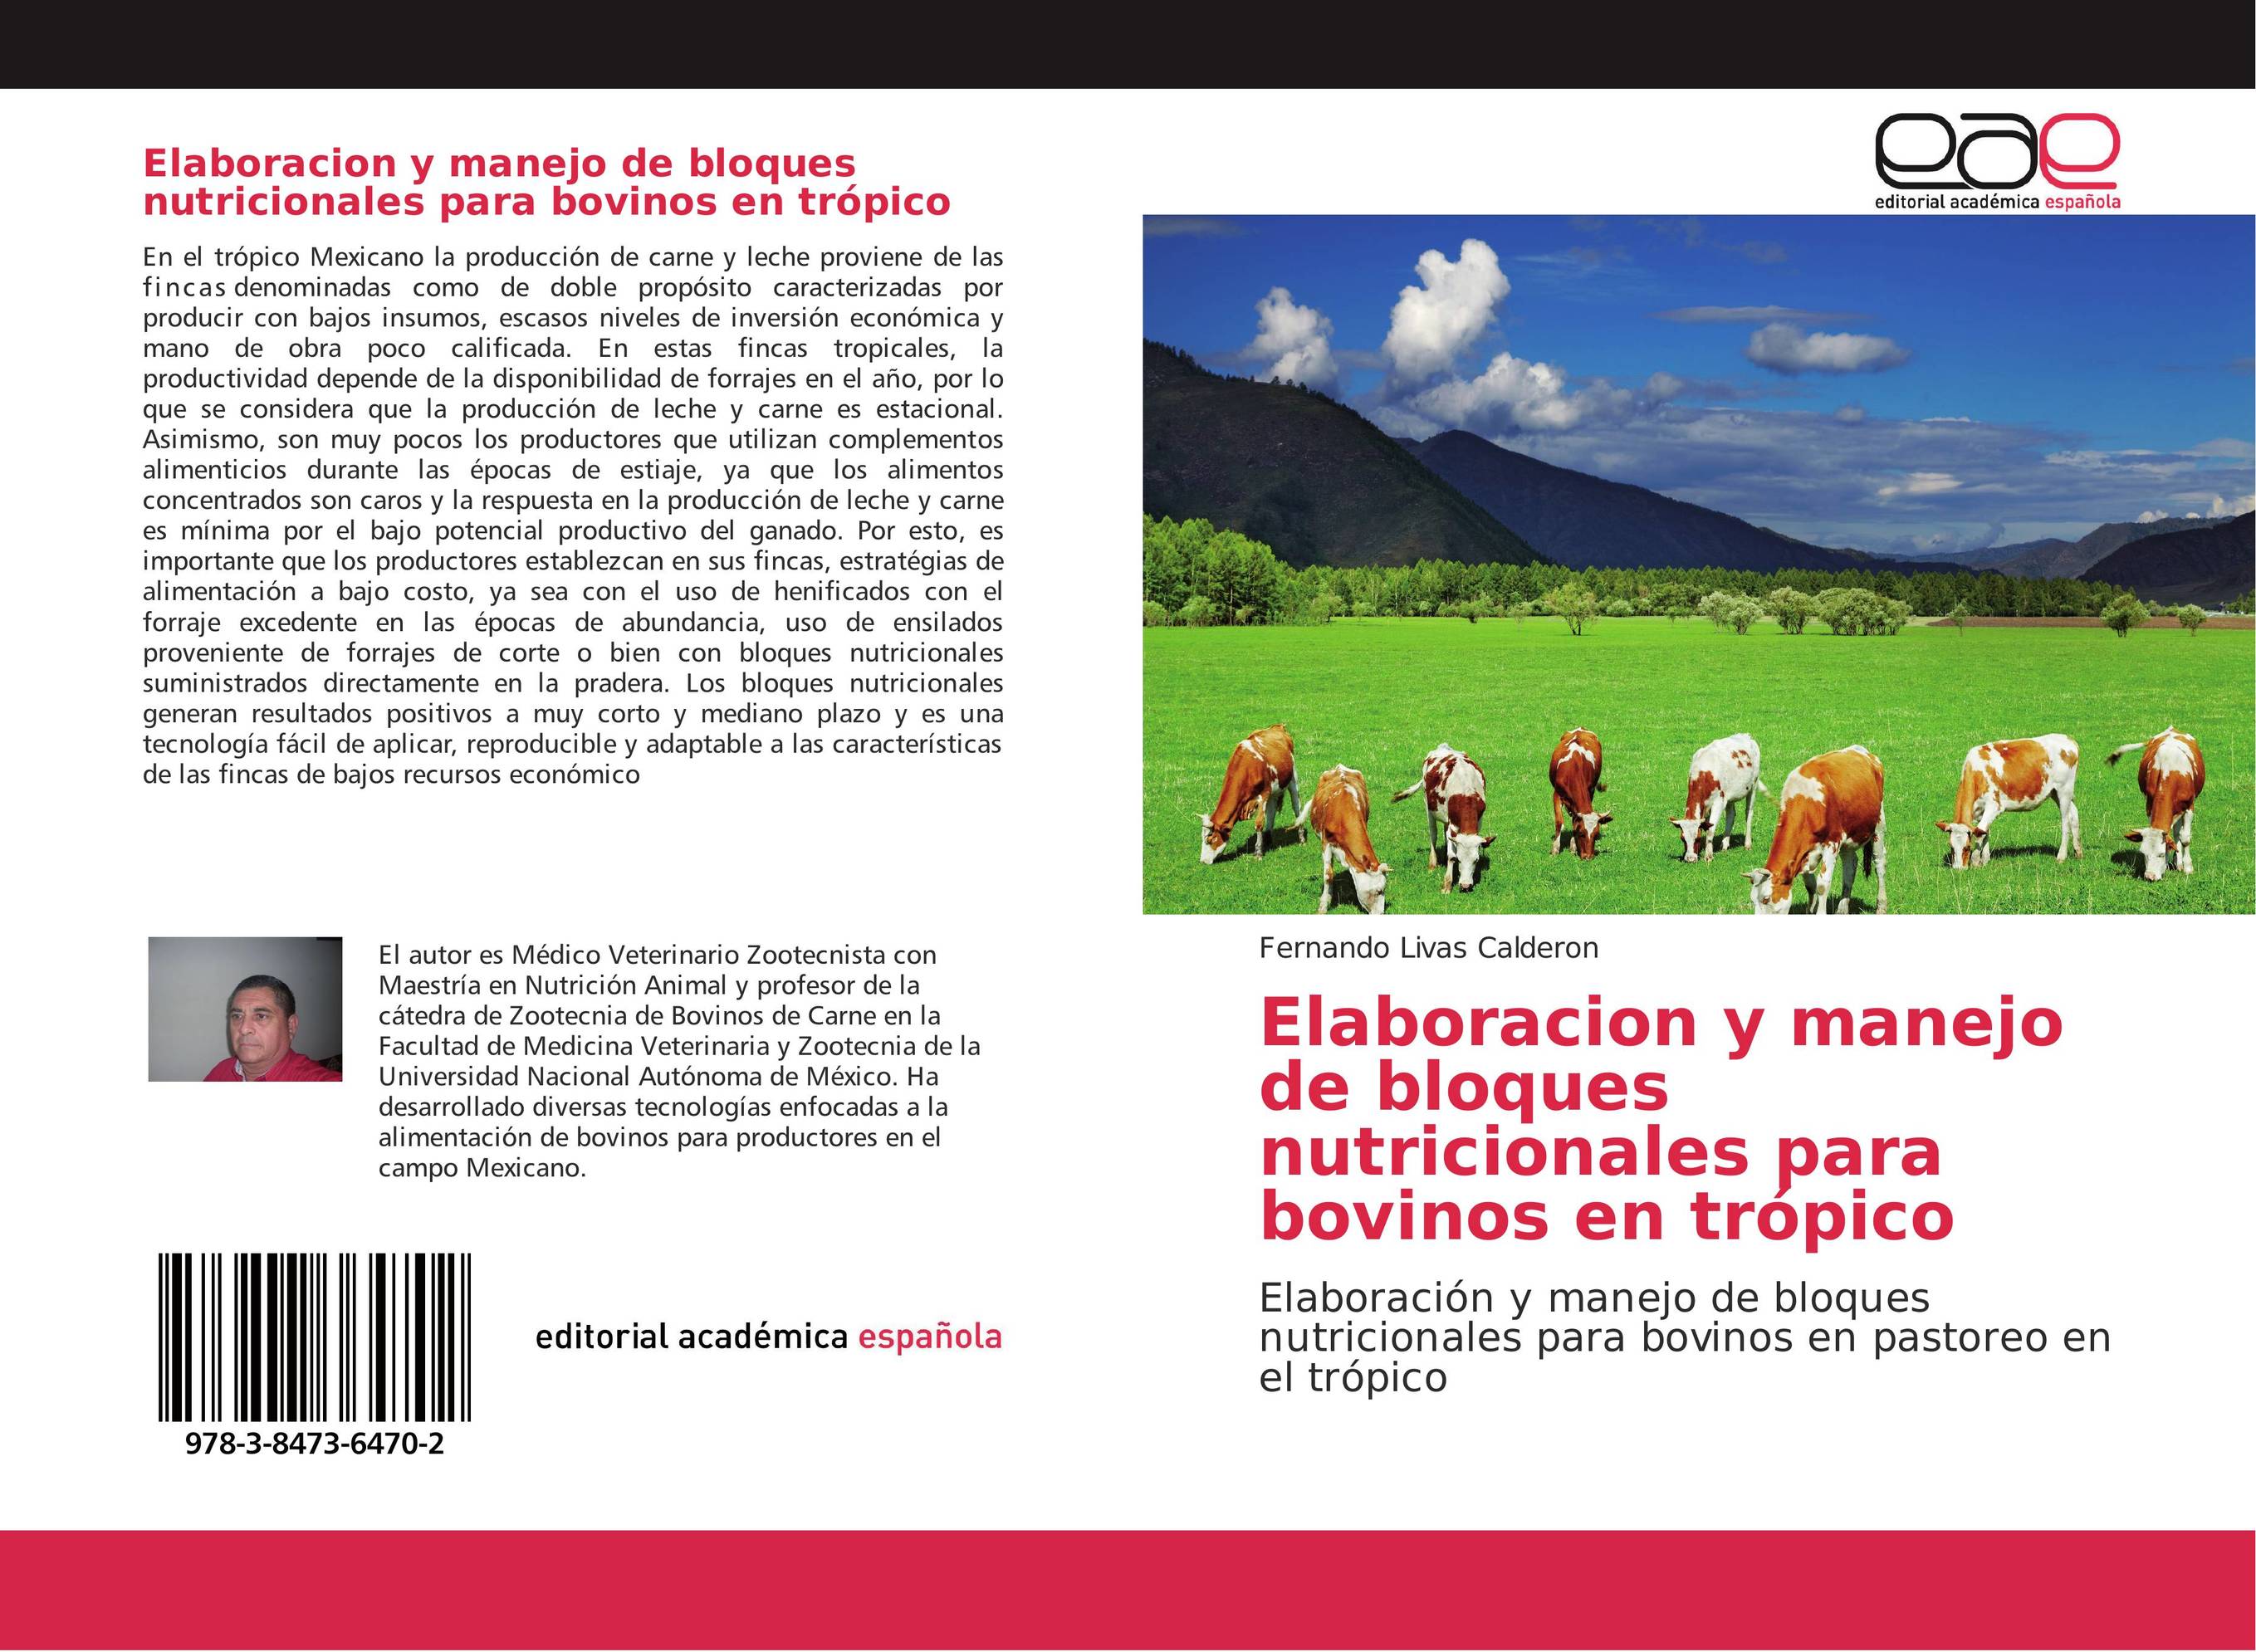 Elaboracion y manejo de bloques nutricionales para bovinos en trópico